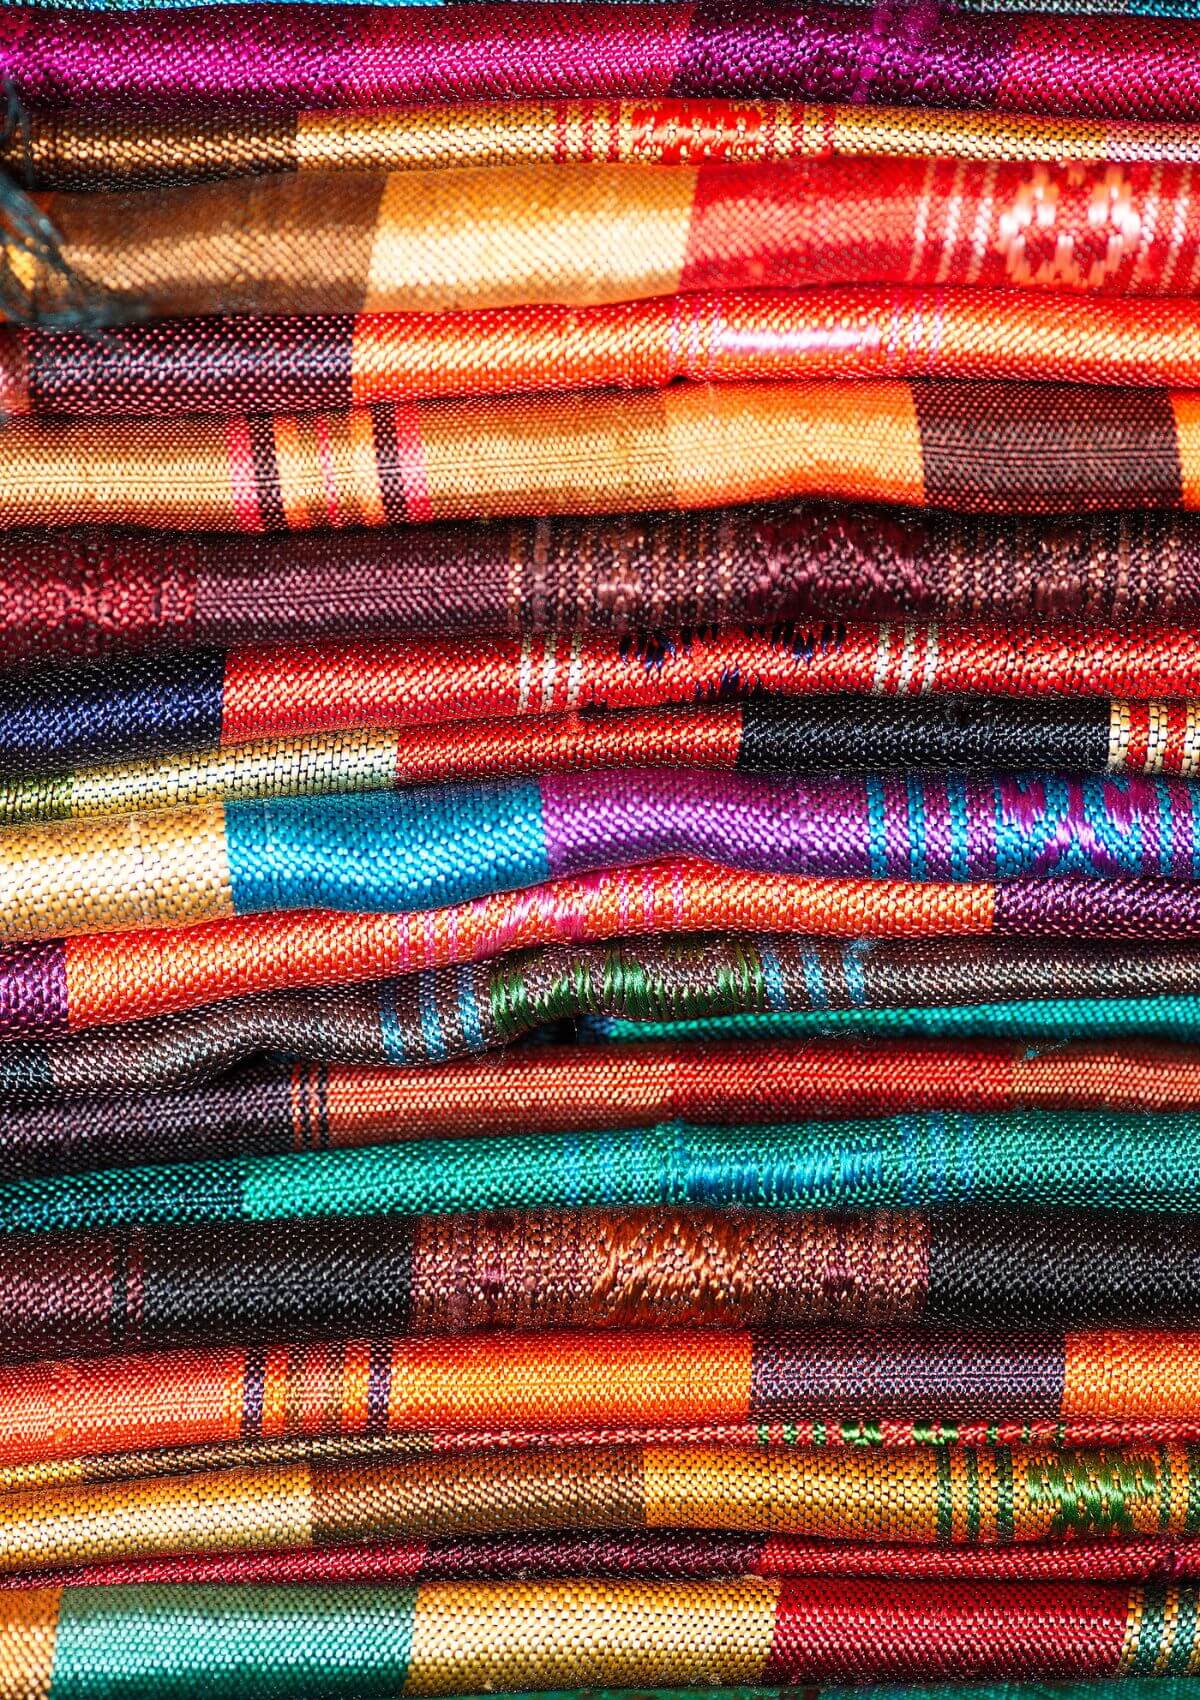 Thai silk is a fantastic souvenir from Thailand